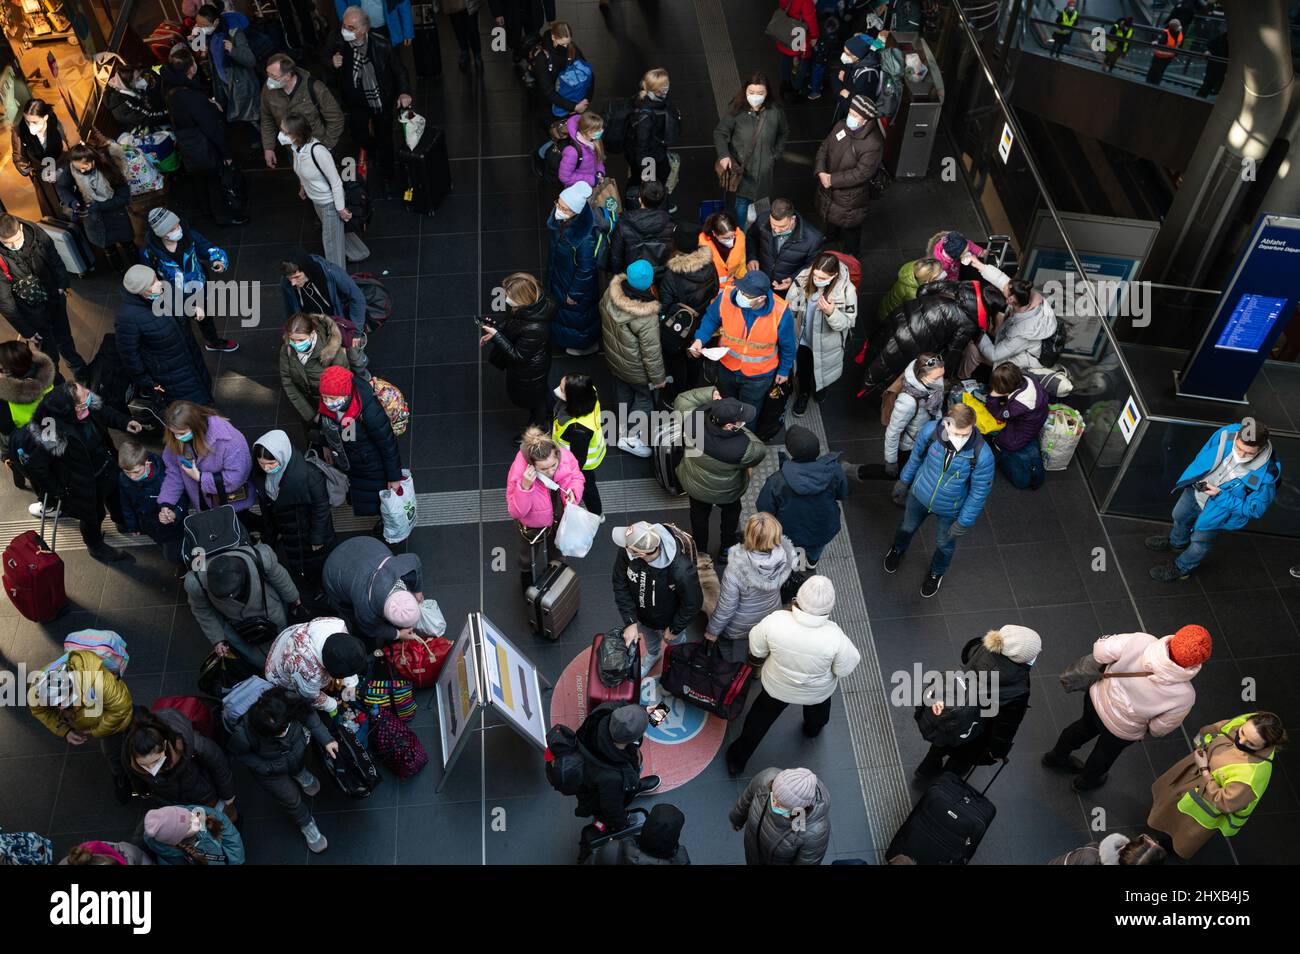 10.03.2022, Berlin, Deutschland, Europa - Kriegsflüchtlinge aus der Ukraine kommen am Berliner Hauptbahnhof an, nachdem sie dem Krieg in ihrem Heimatland entkommen sind. Stockfoto